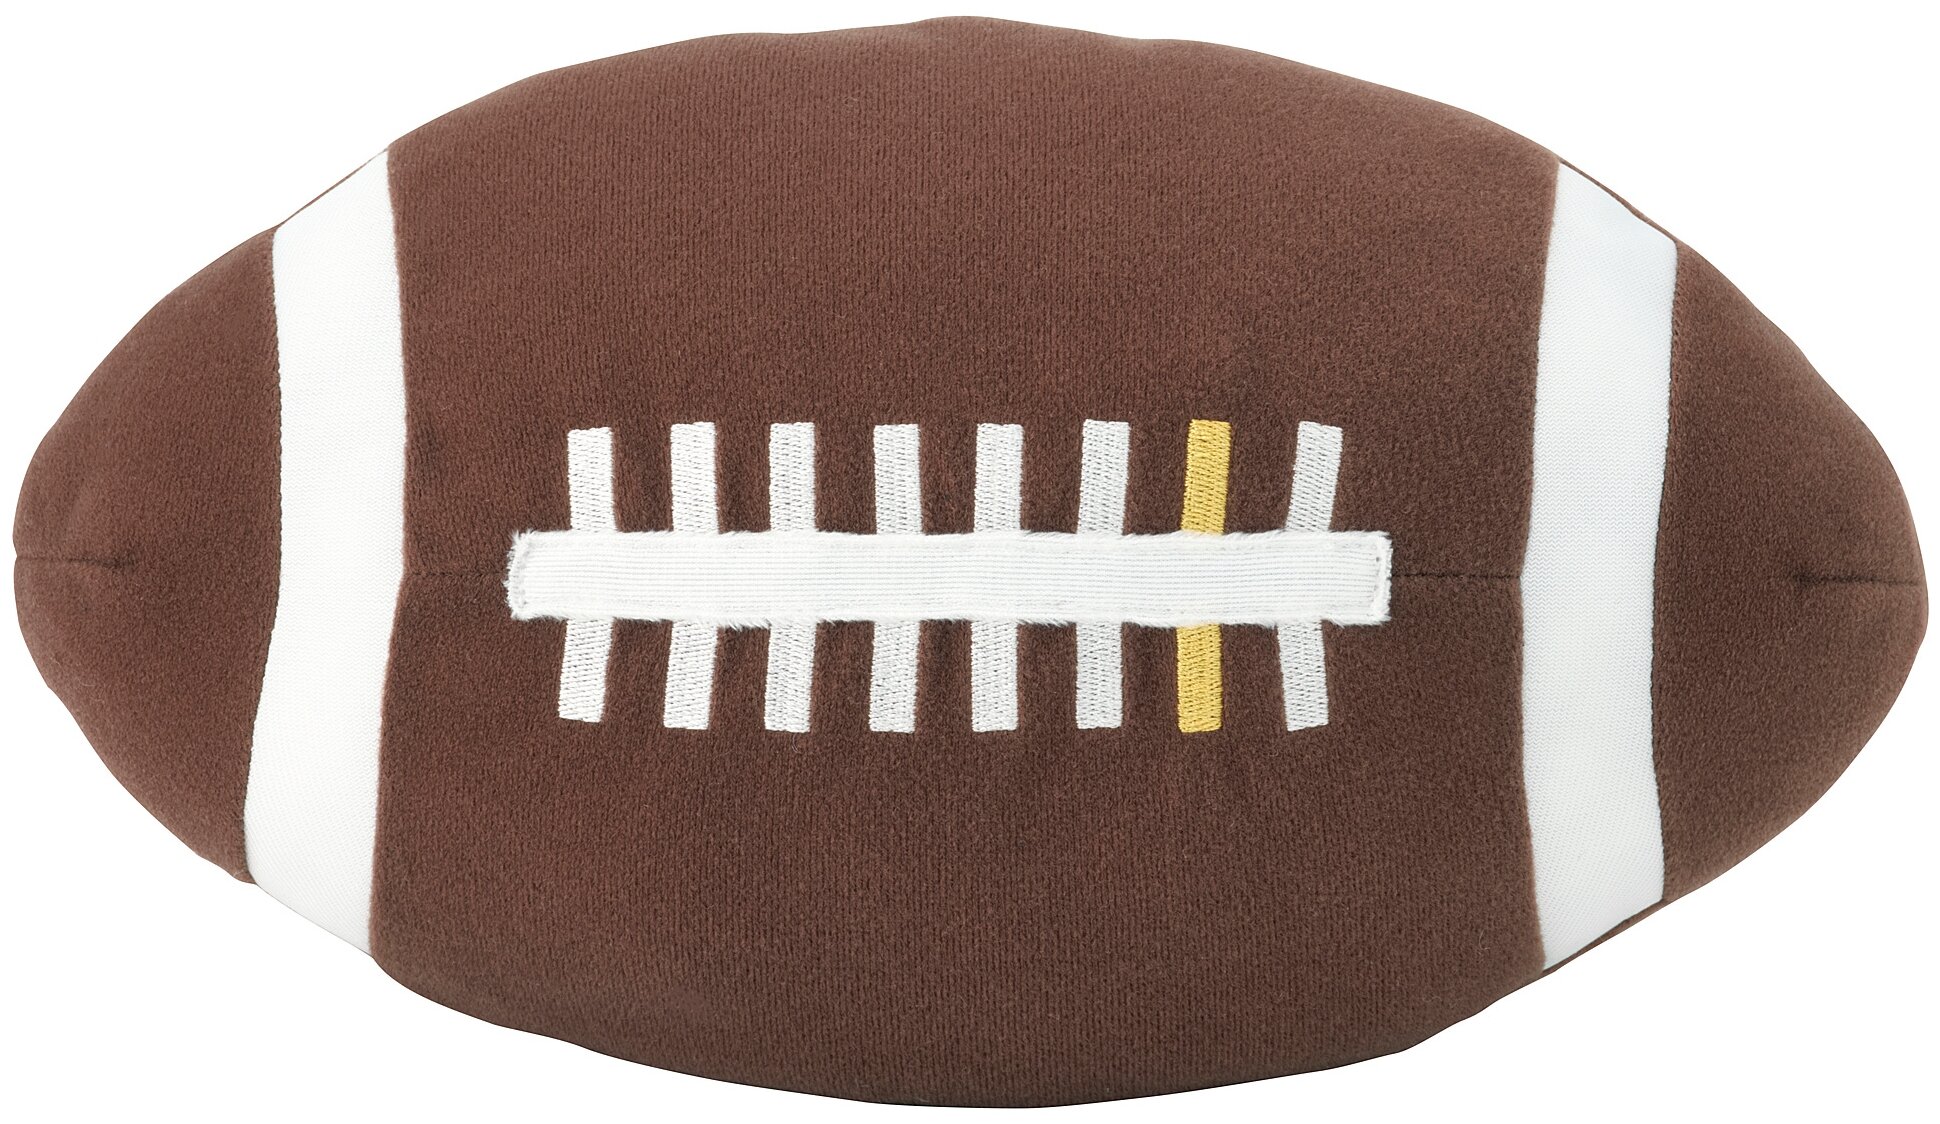 Мягкая игрушка ИКЕА Американский футбол ОНСКАД, 27 см, коричневый